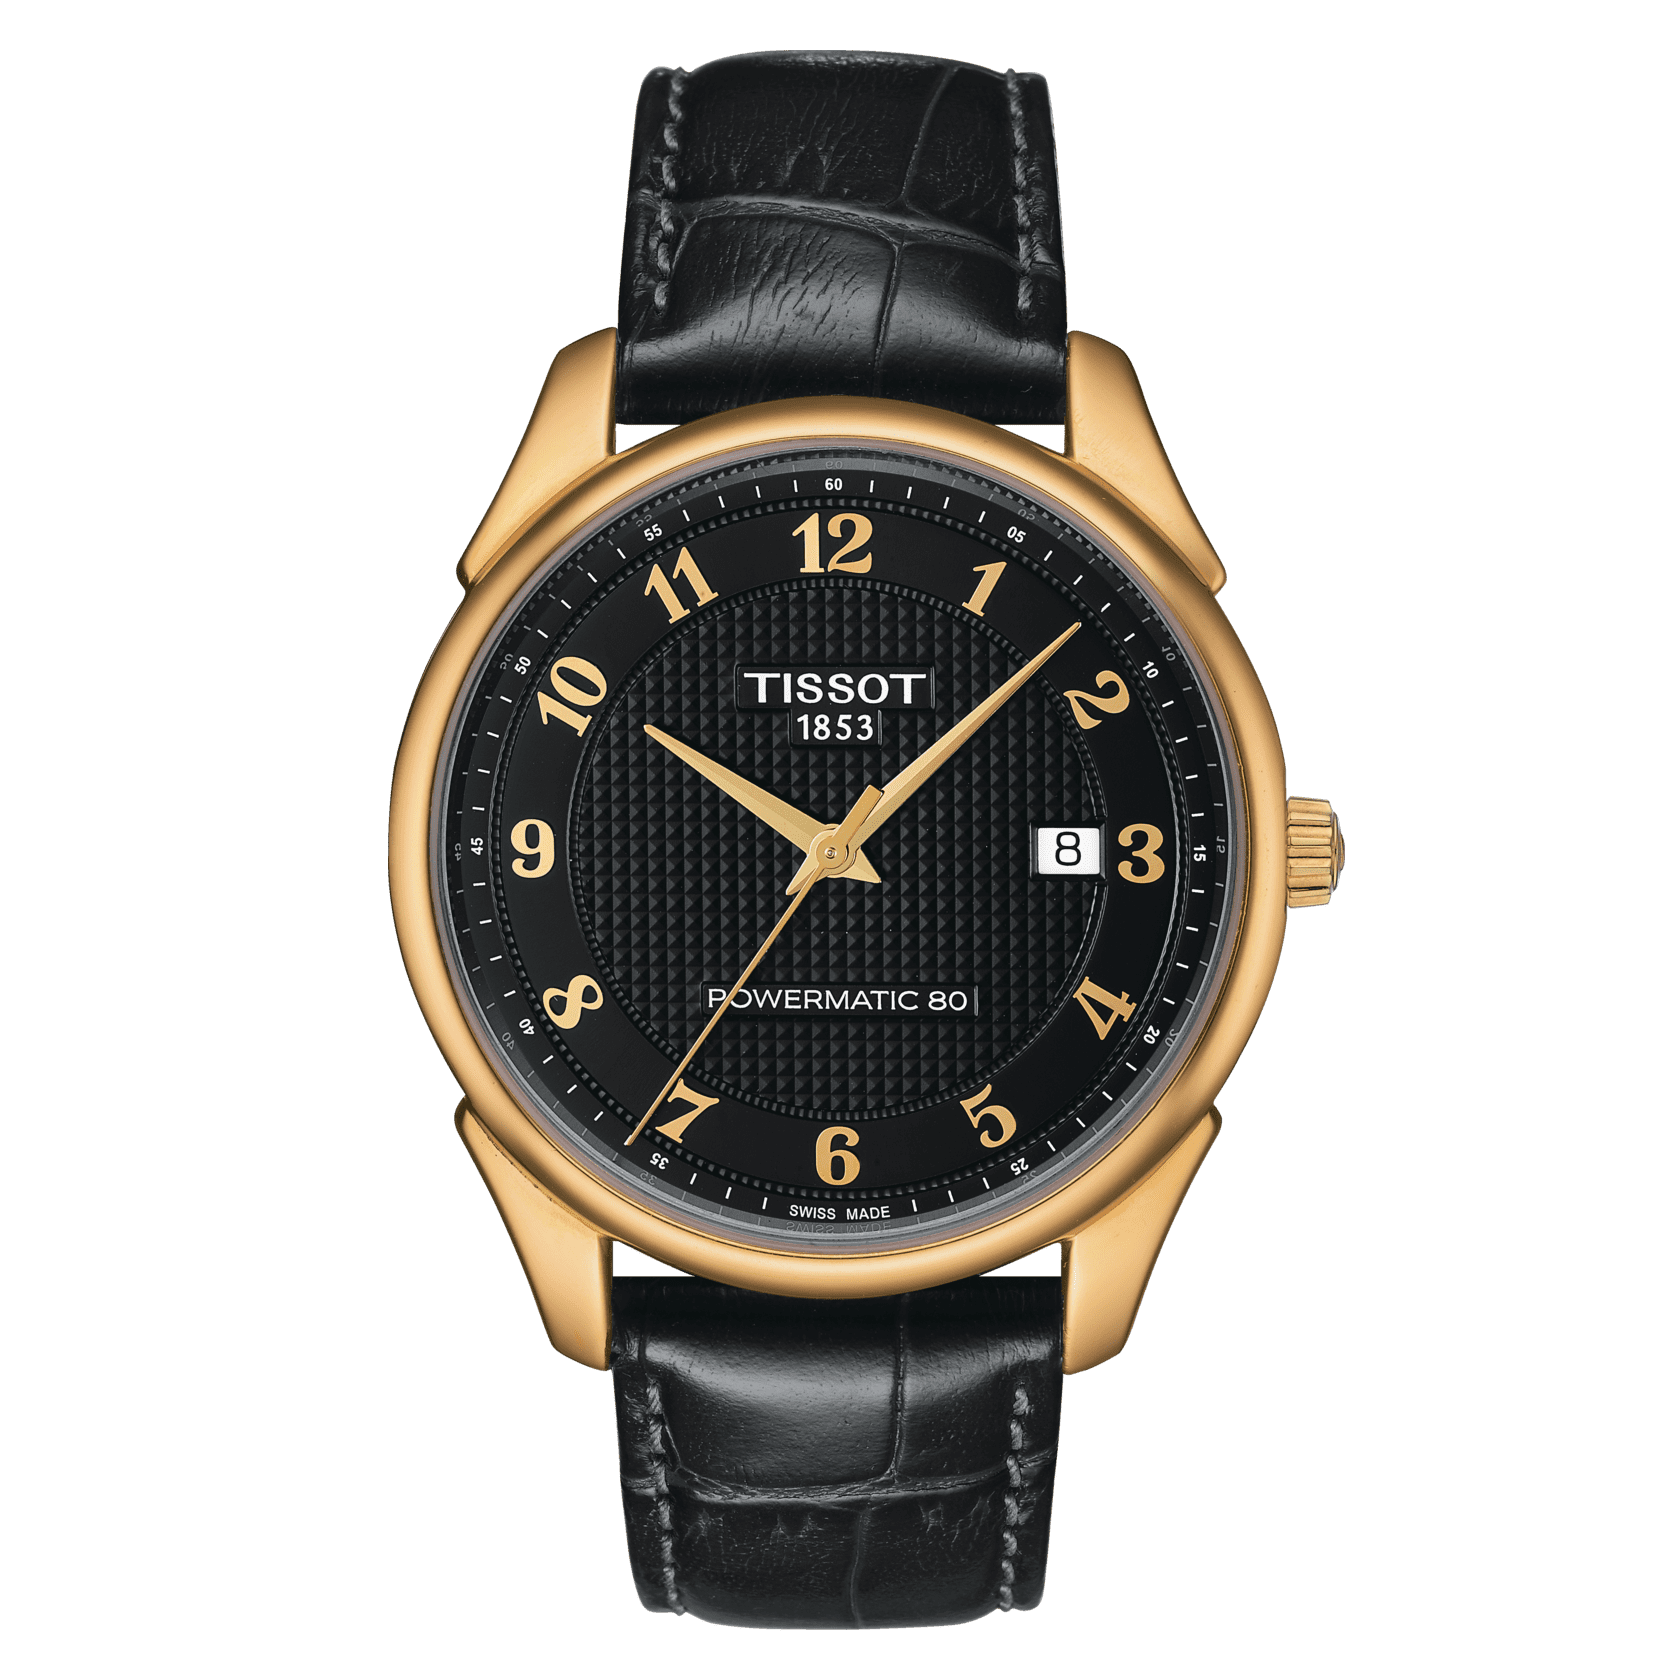 Replikas Montblanc Watches